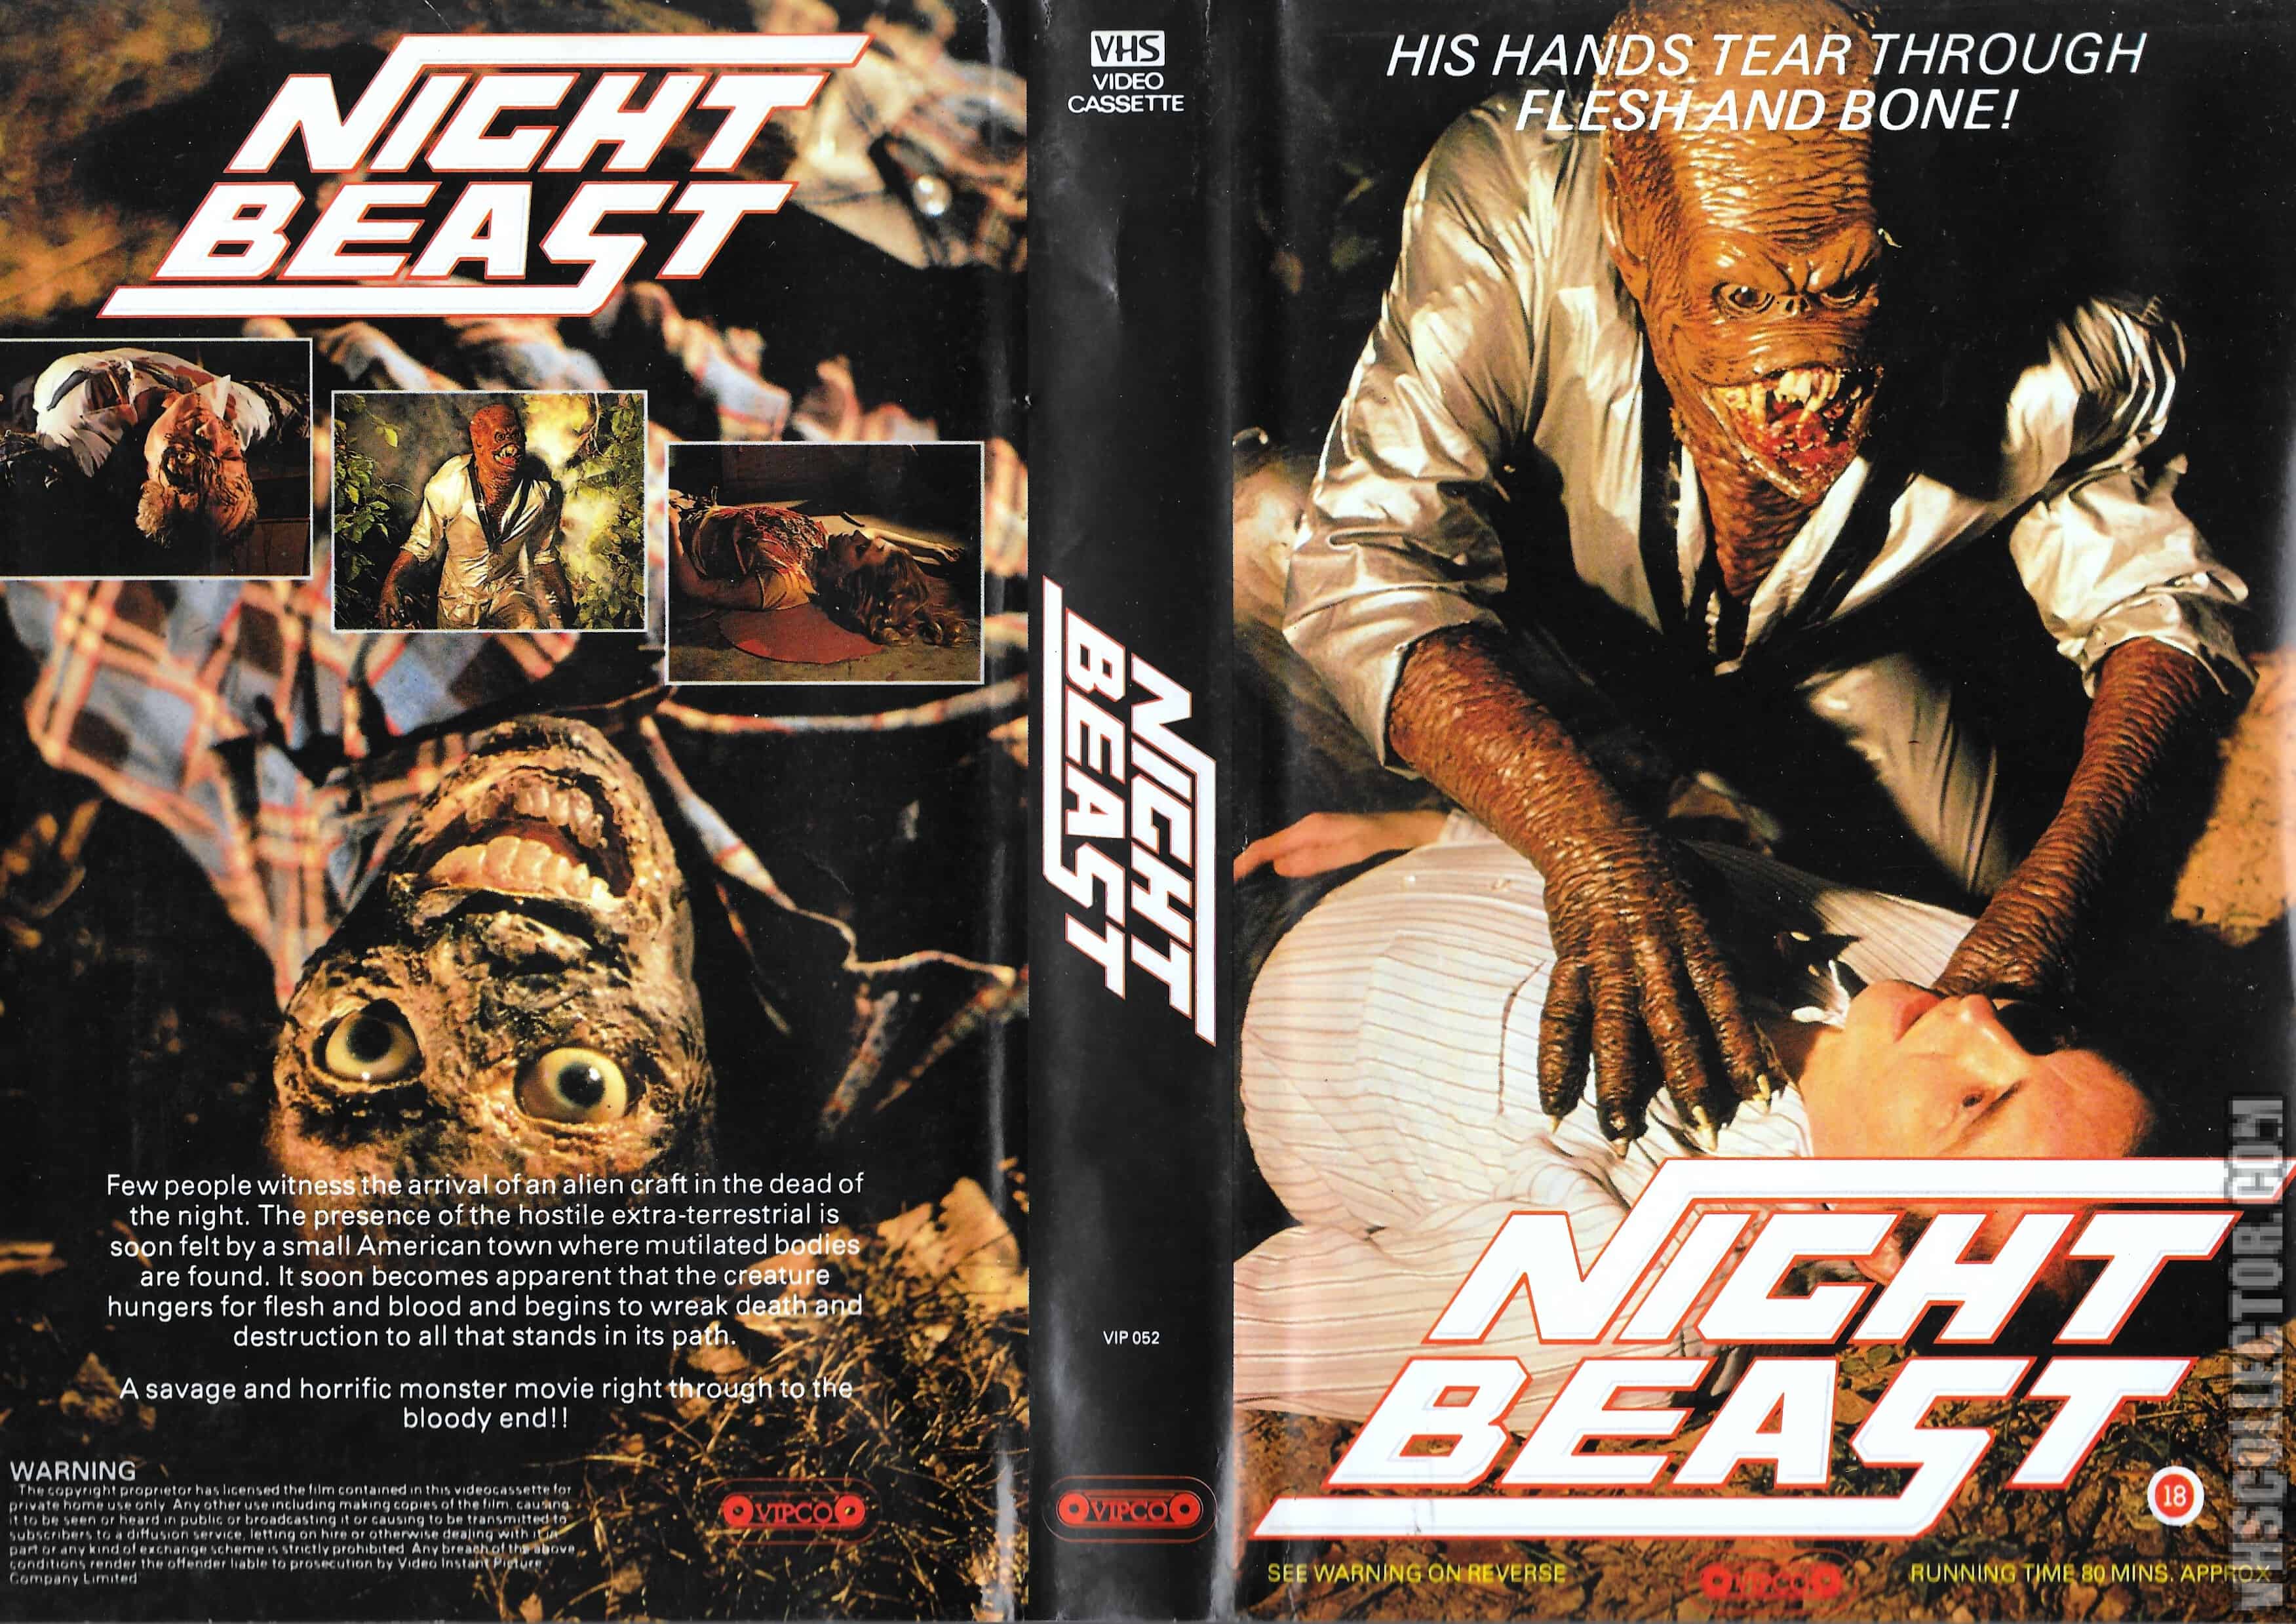 Night Beast (1)